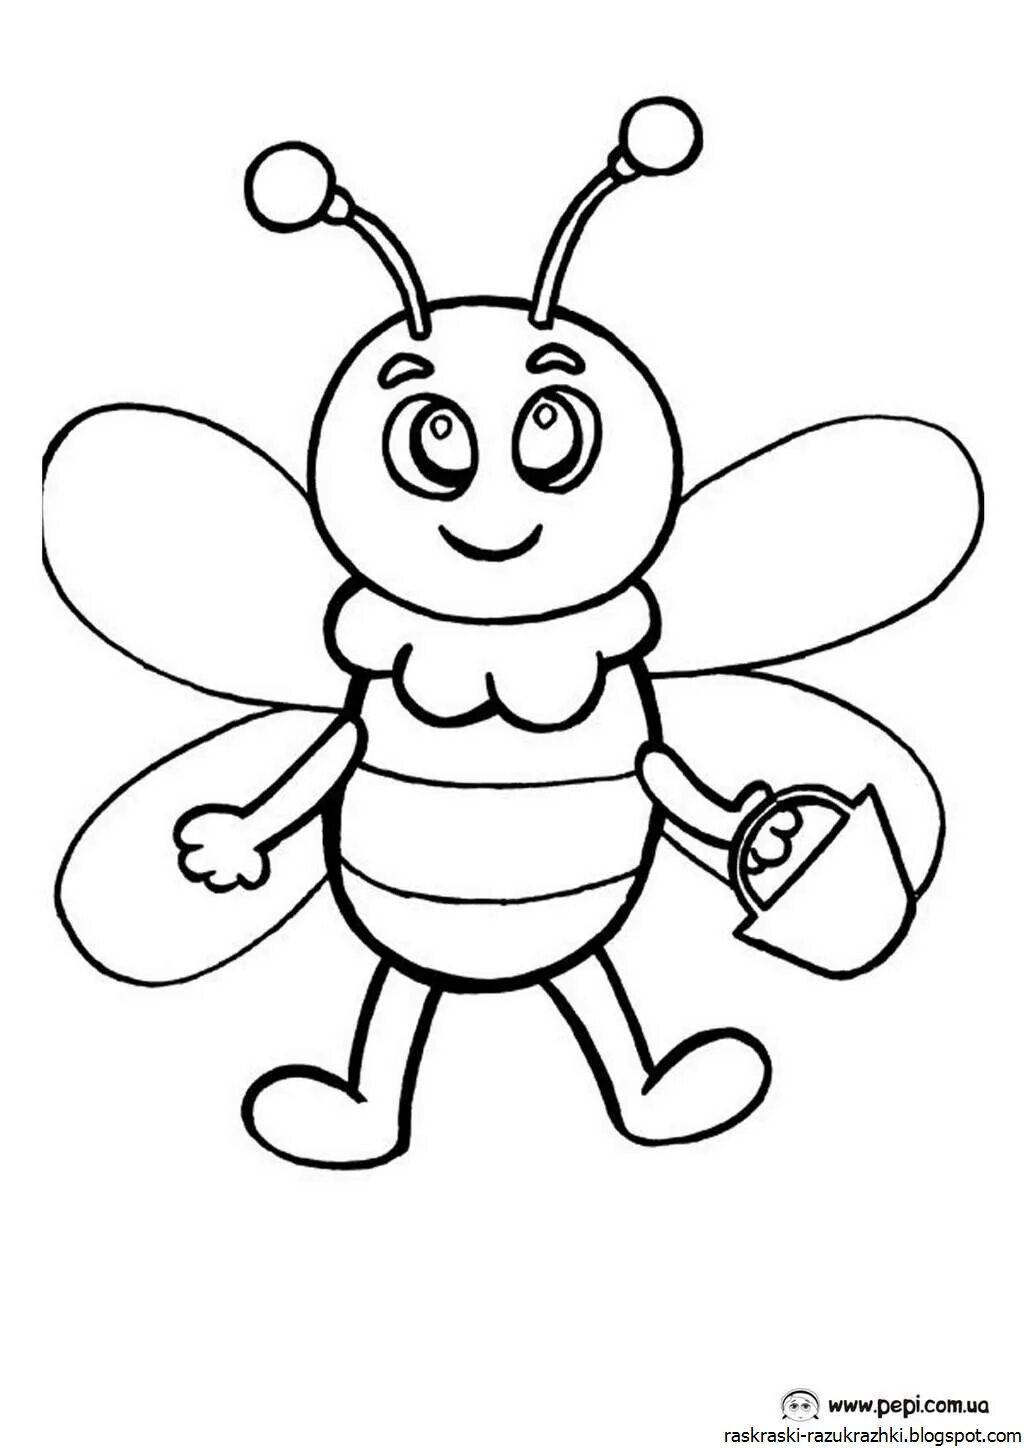 Пчела раскраска. Раскраска пчёлка для детей. Пчела раскраска для детей. Пчела картинка для детей раскраска. Раскраска пчела для детей